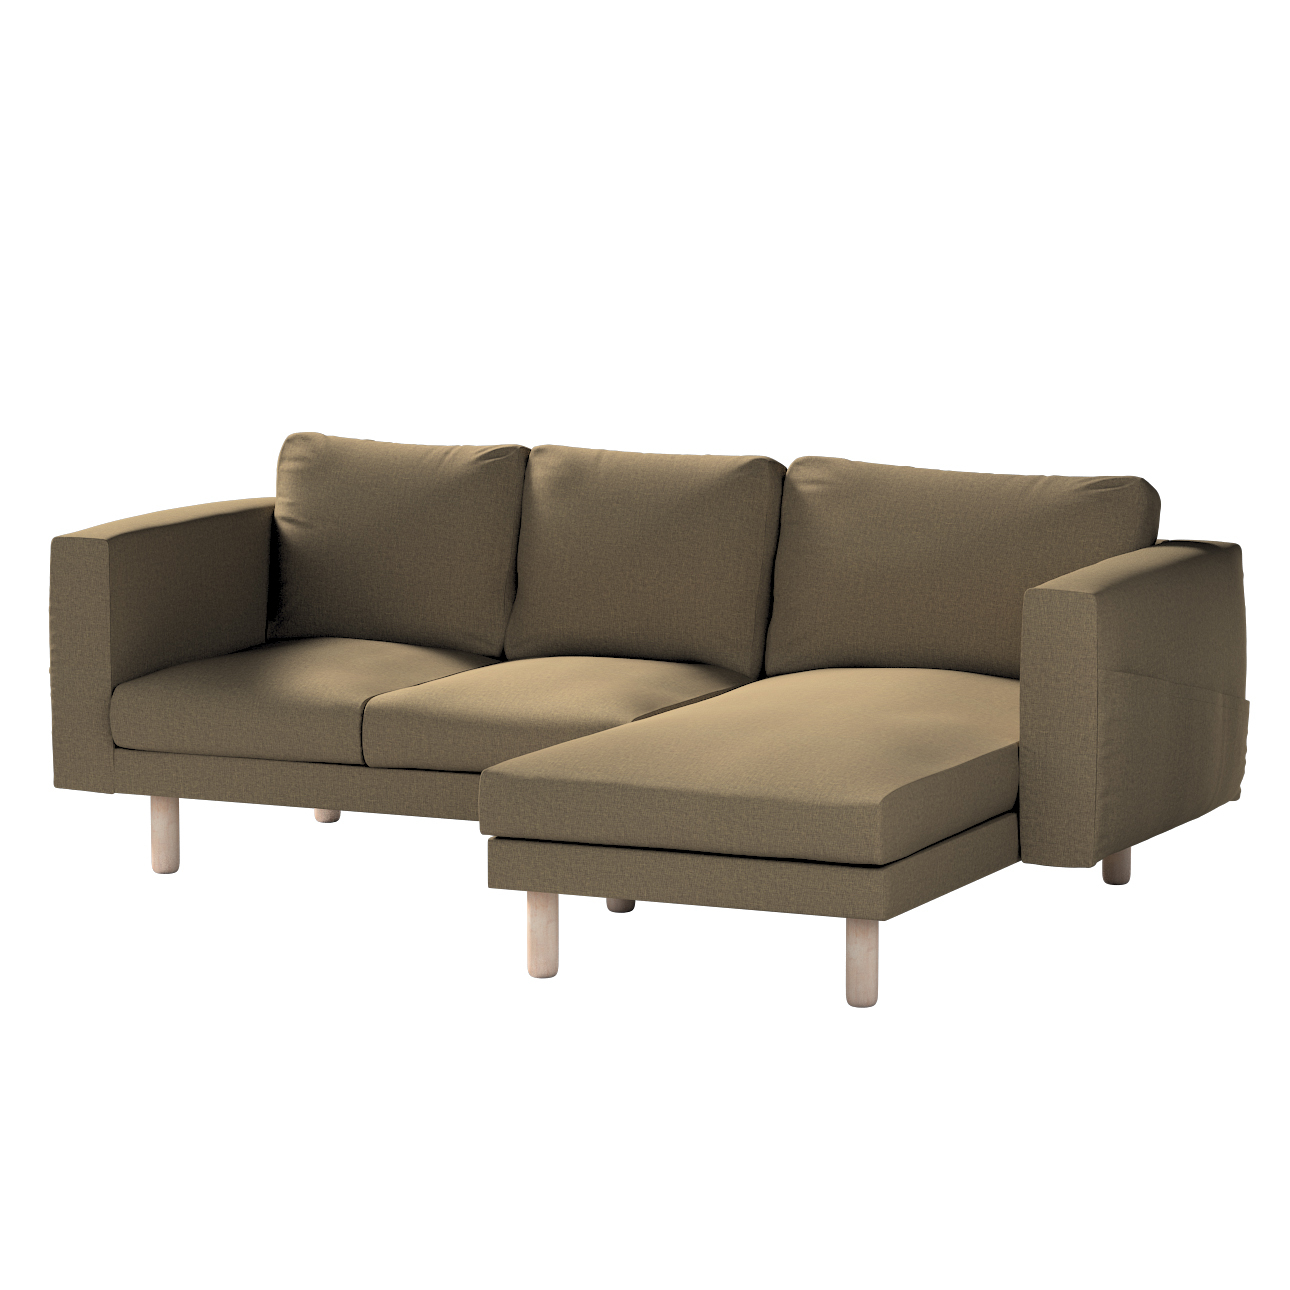 Bezug für Norsborg 3-Sitzer Sofa mit Recamiere, grau-braun, Norsborg Bezug günstig online kaufen